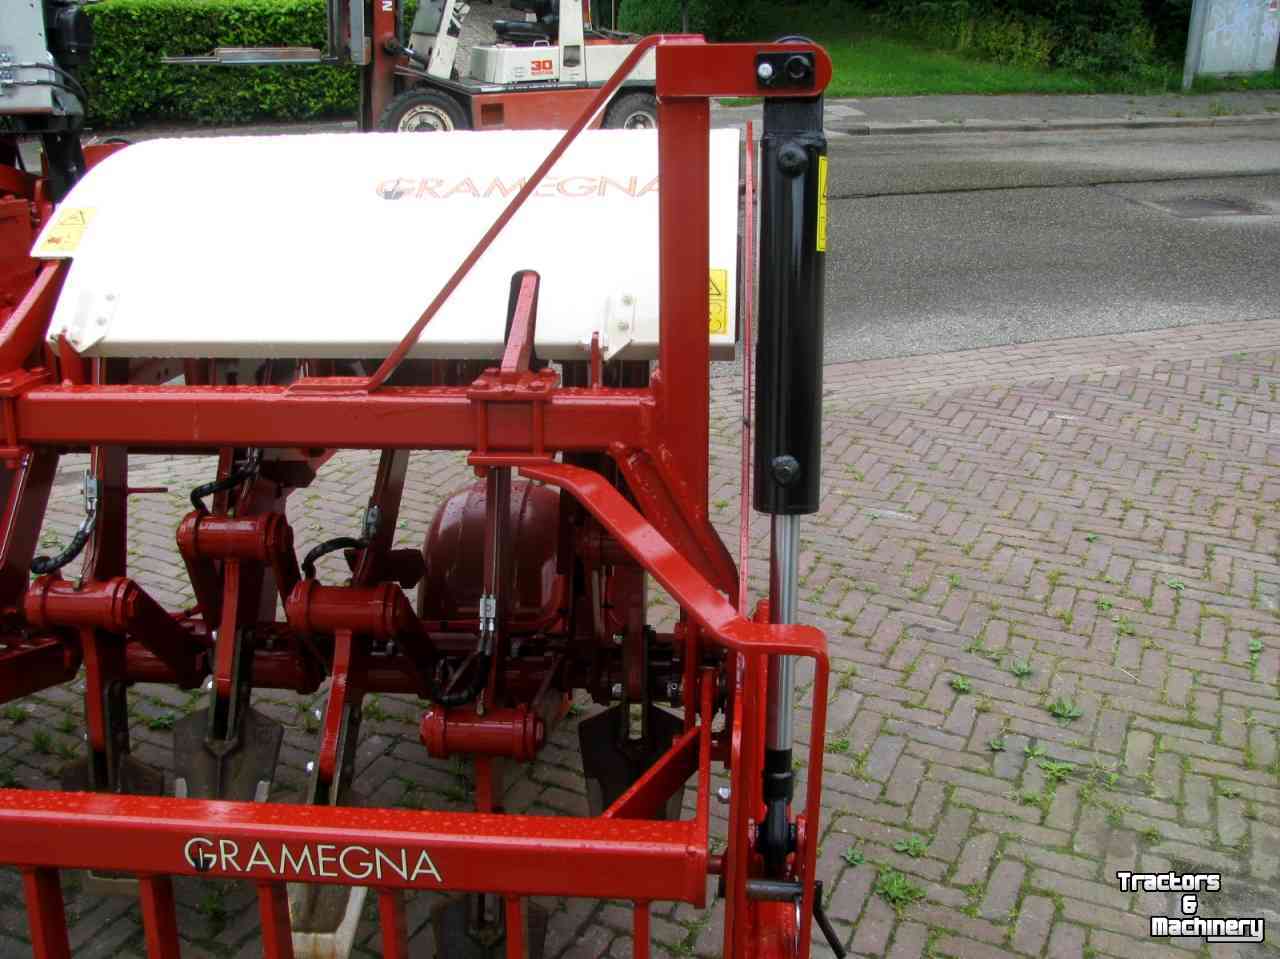 Spader machine Gramegna V86/36